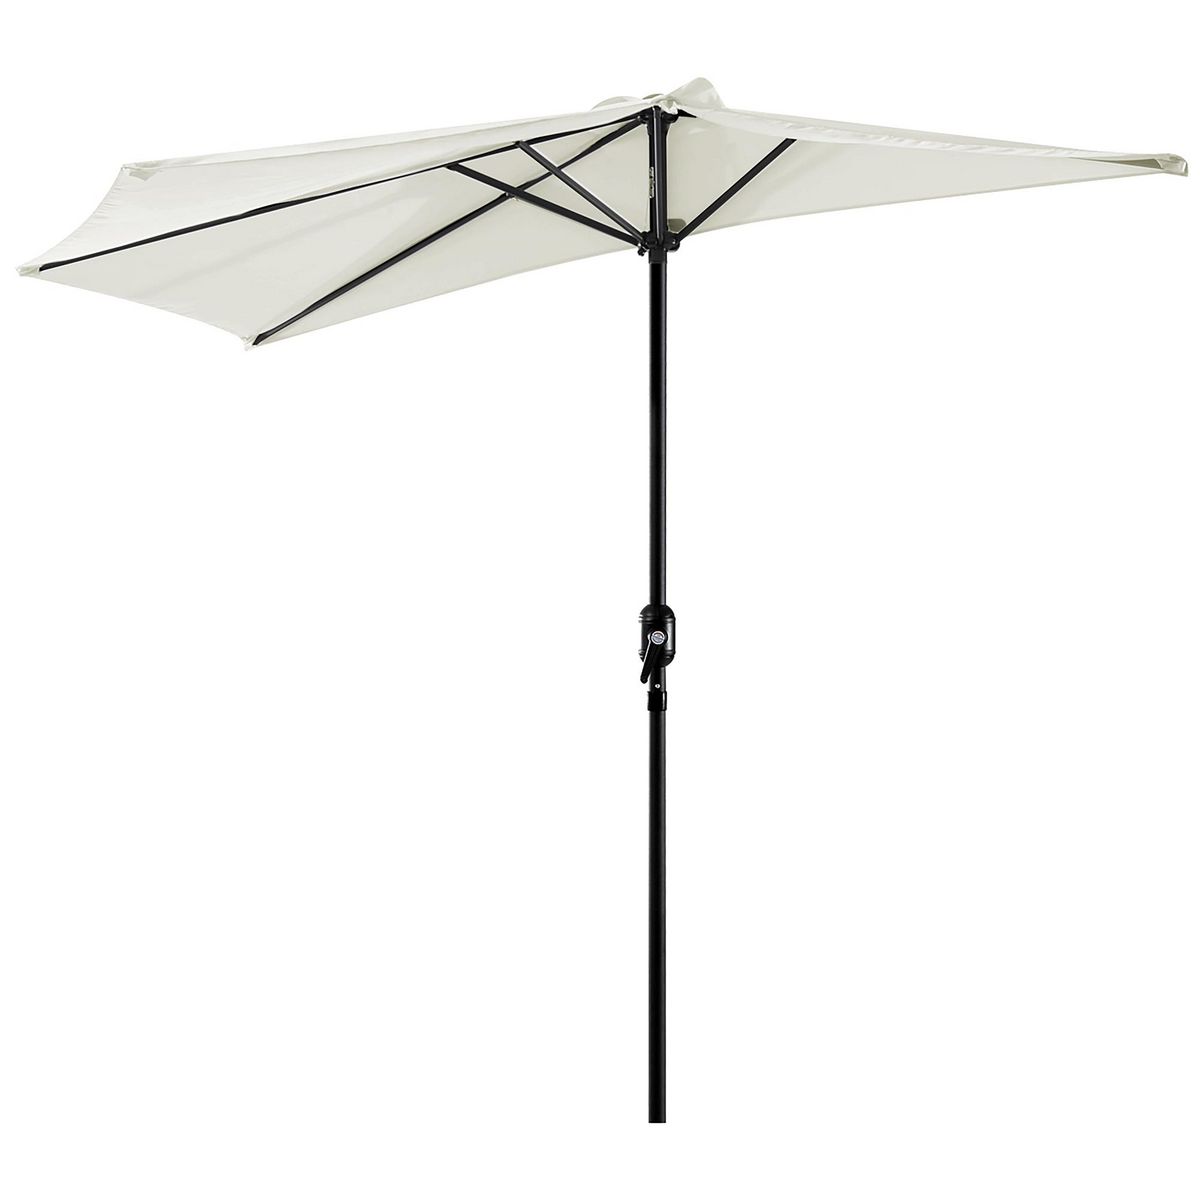 OUTSUNNY Demi parasol, parasol de balcon 5 entretoises métal polyester 2,69L x 1,38l x 2,36H m crème